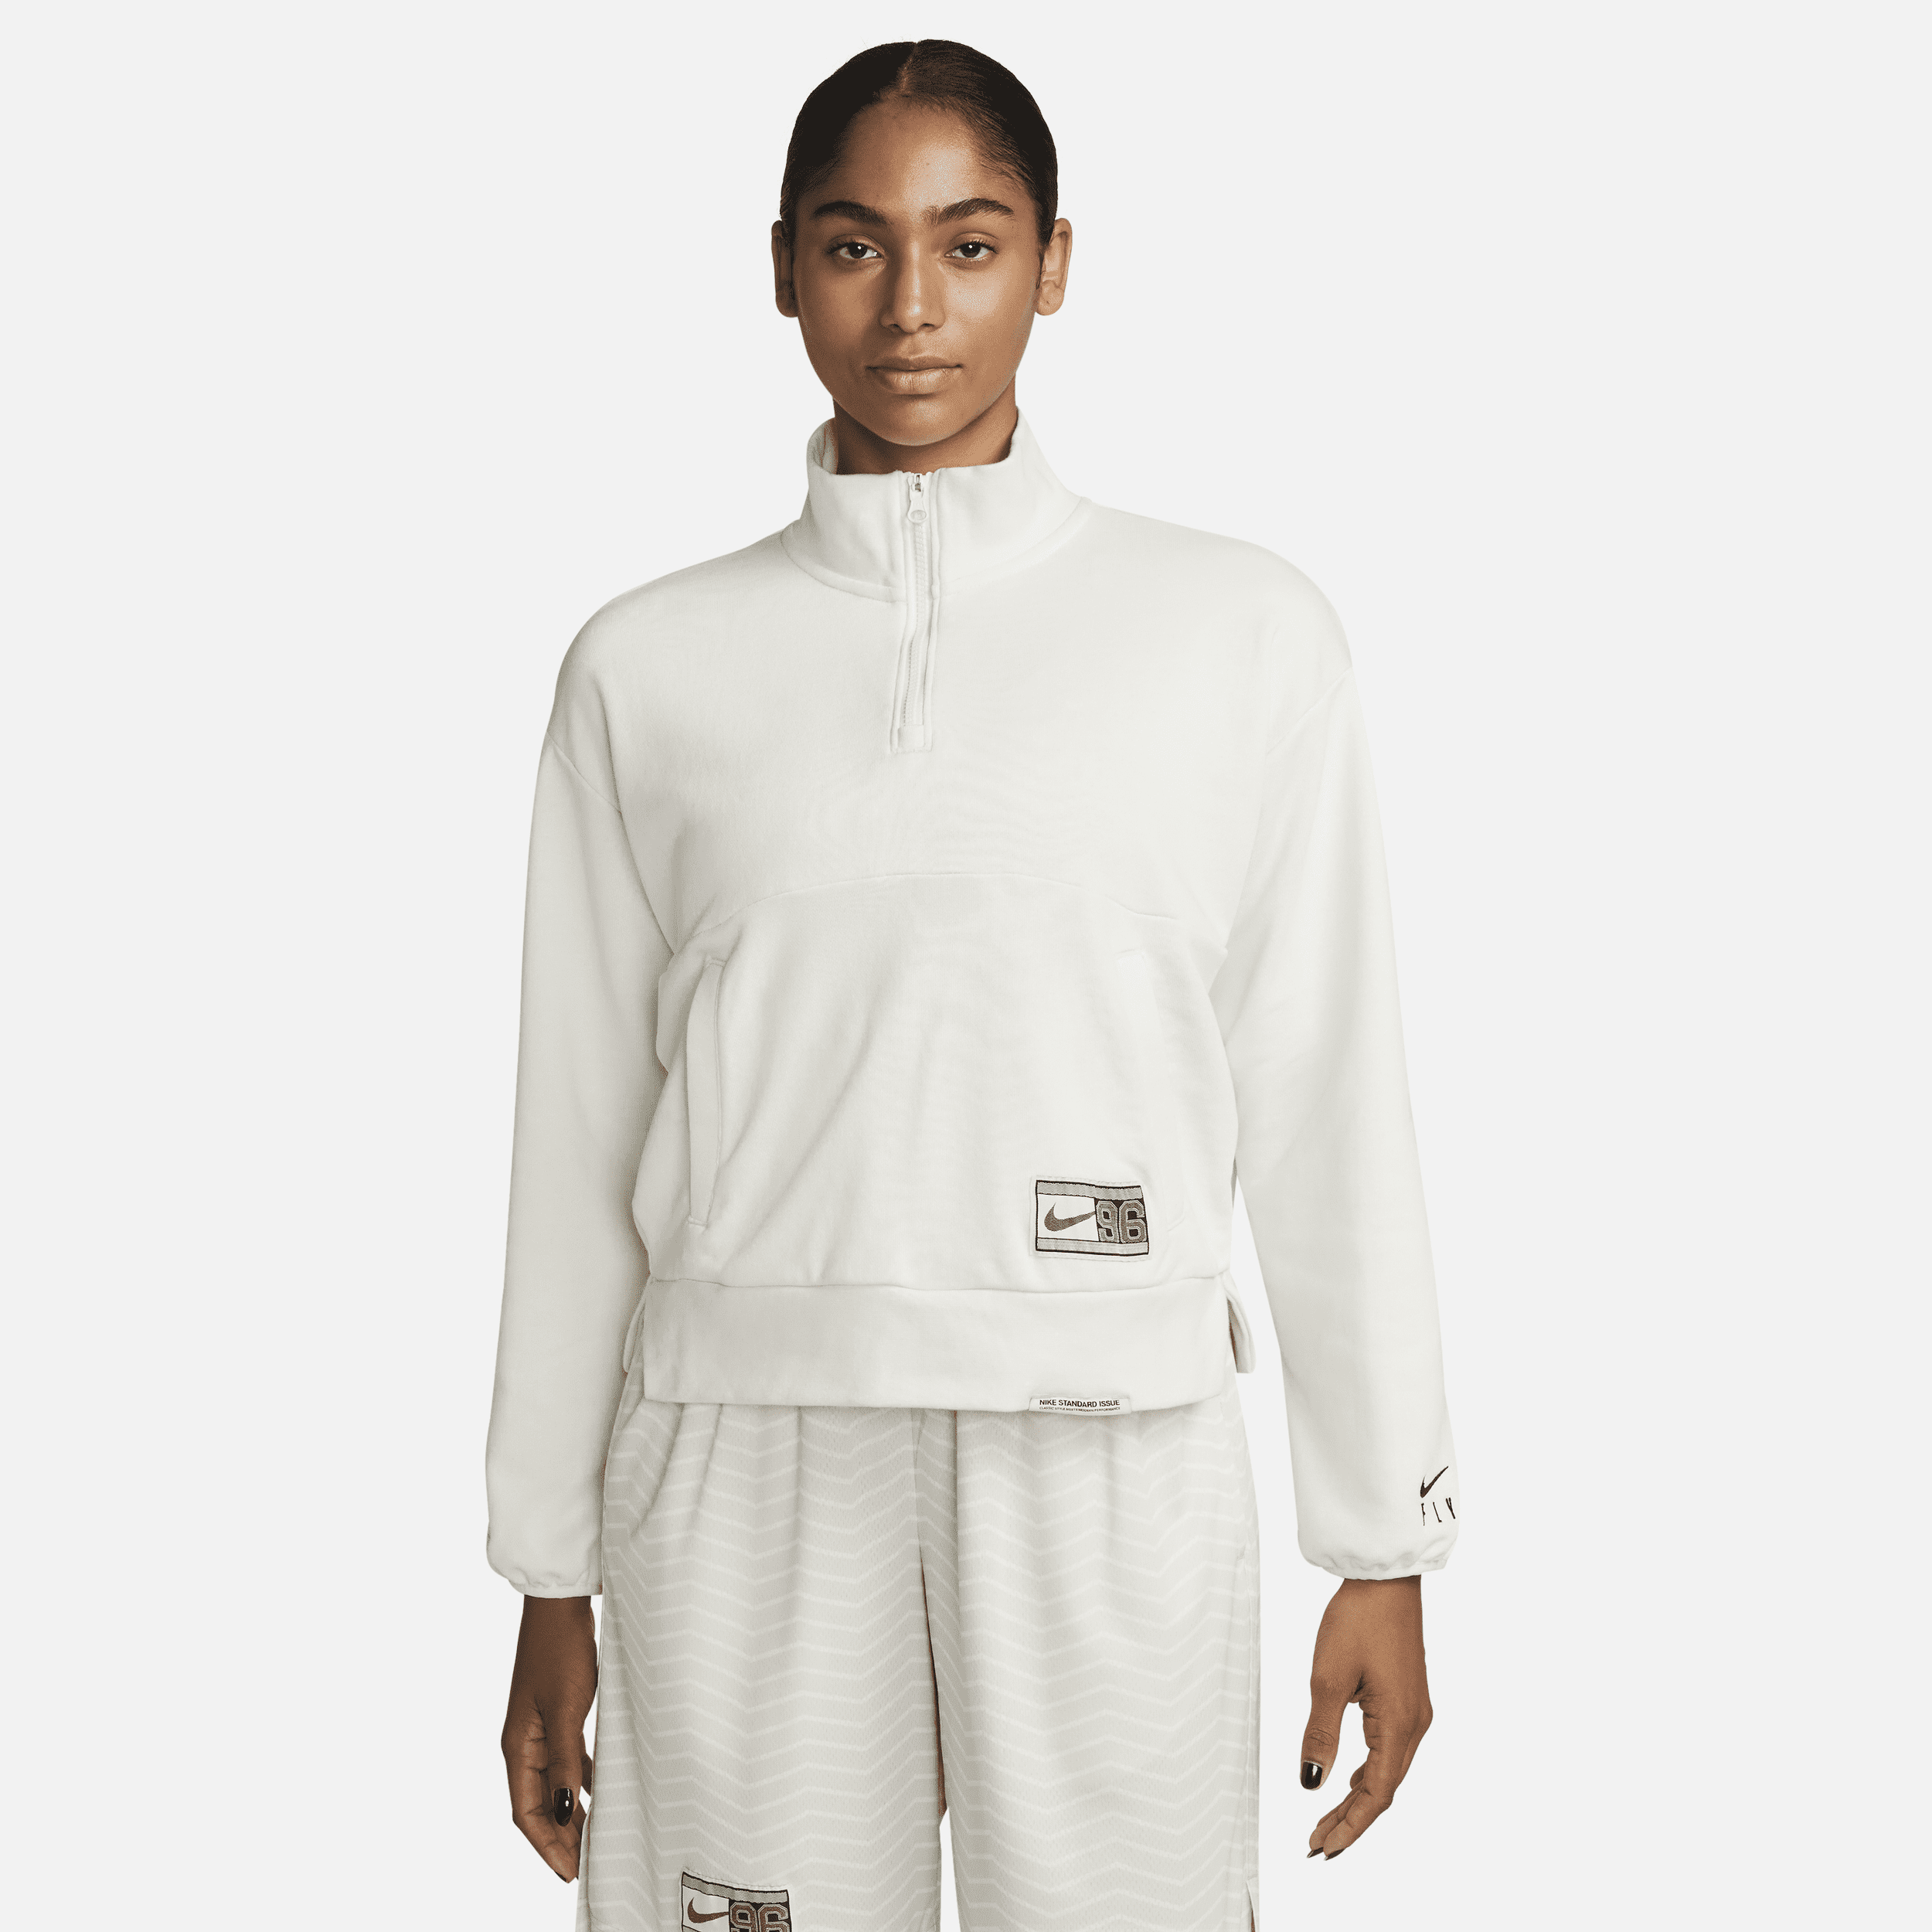 Nike Dri-FIT Swoosh Fly-basketballsweatshirt med 1/4 lynlås til kvinder - hvid